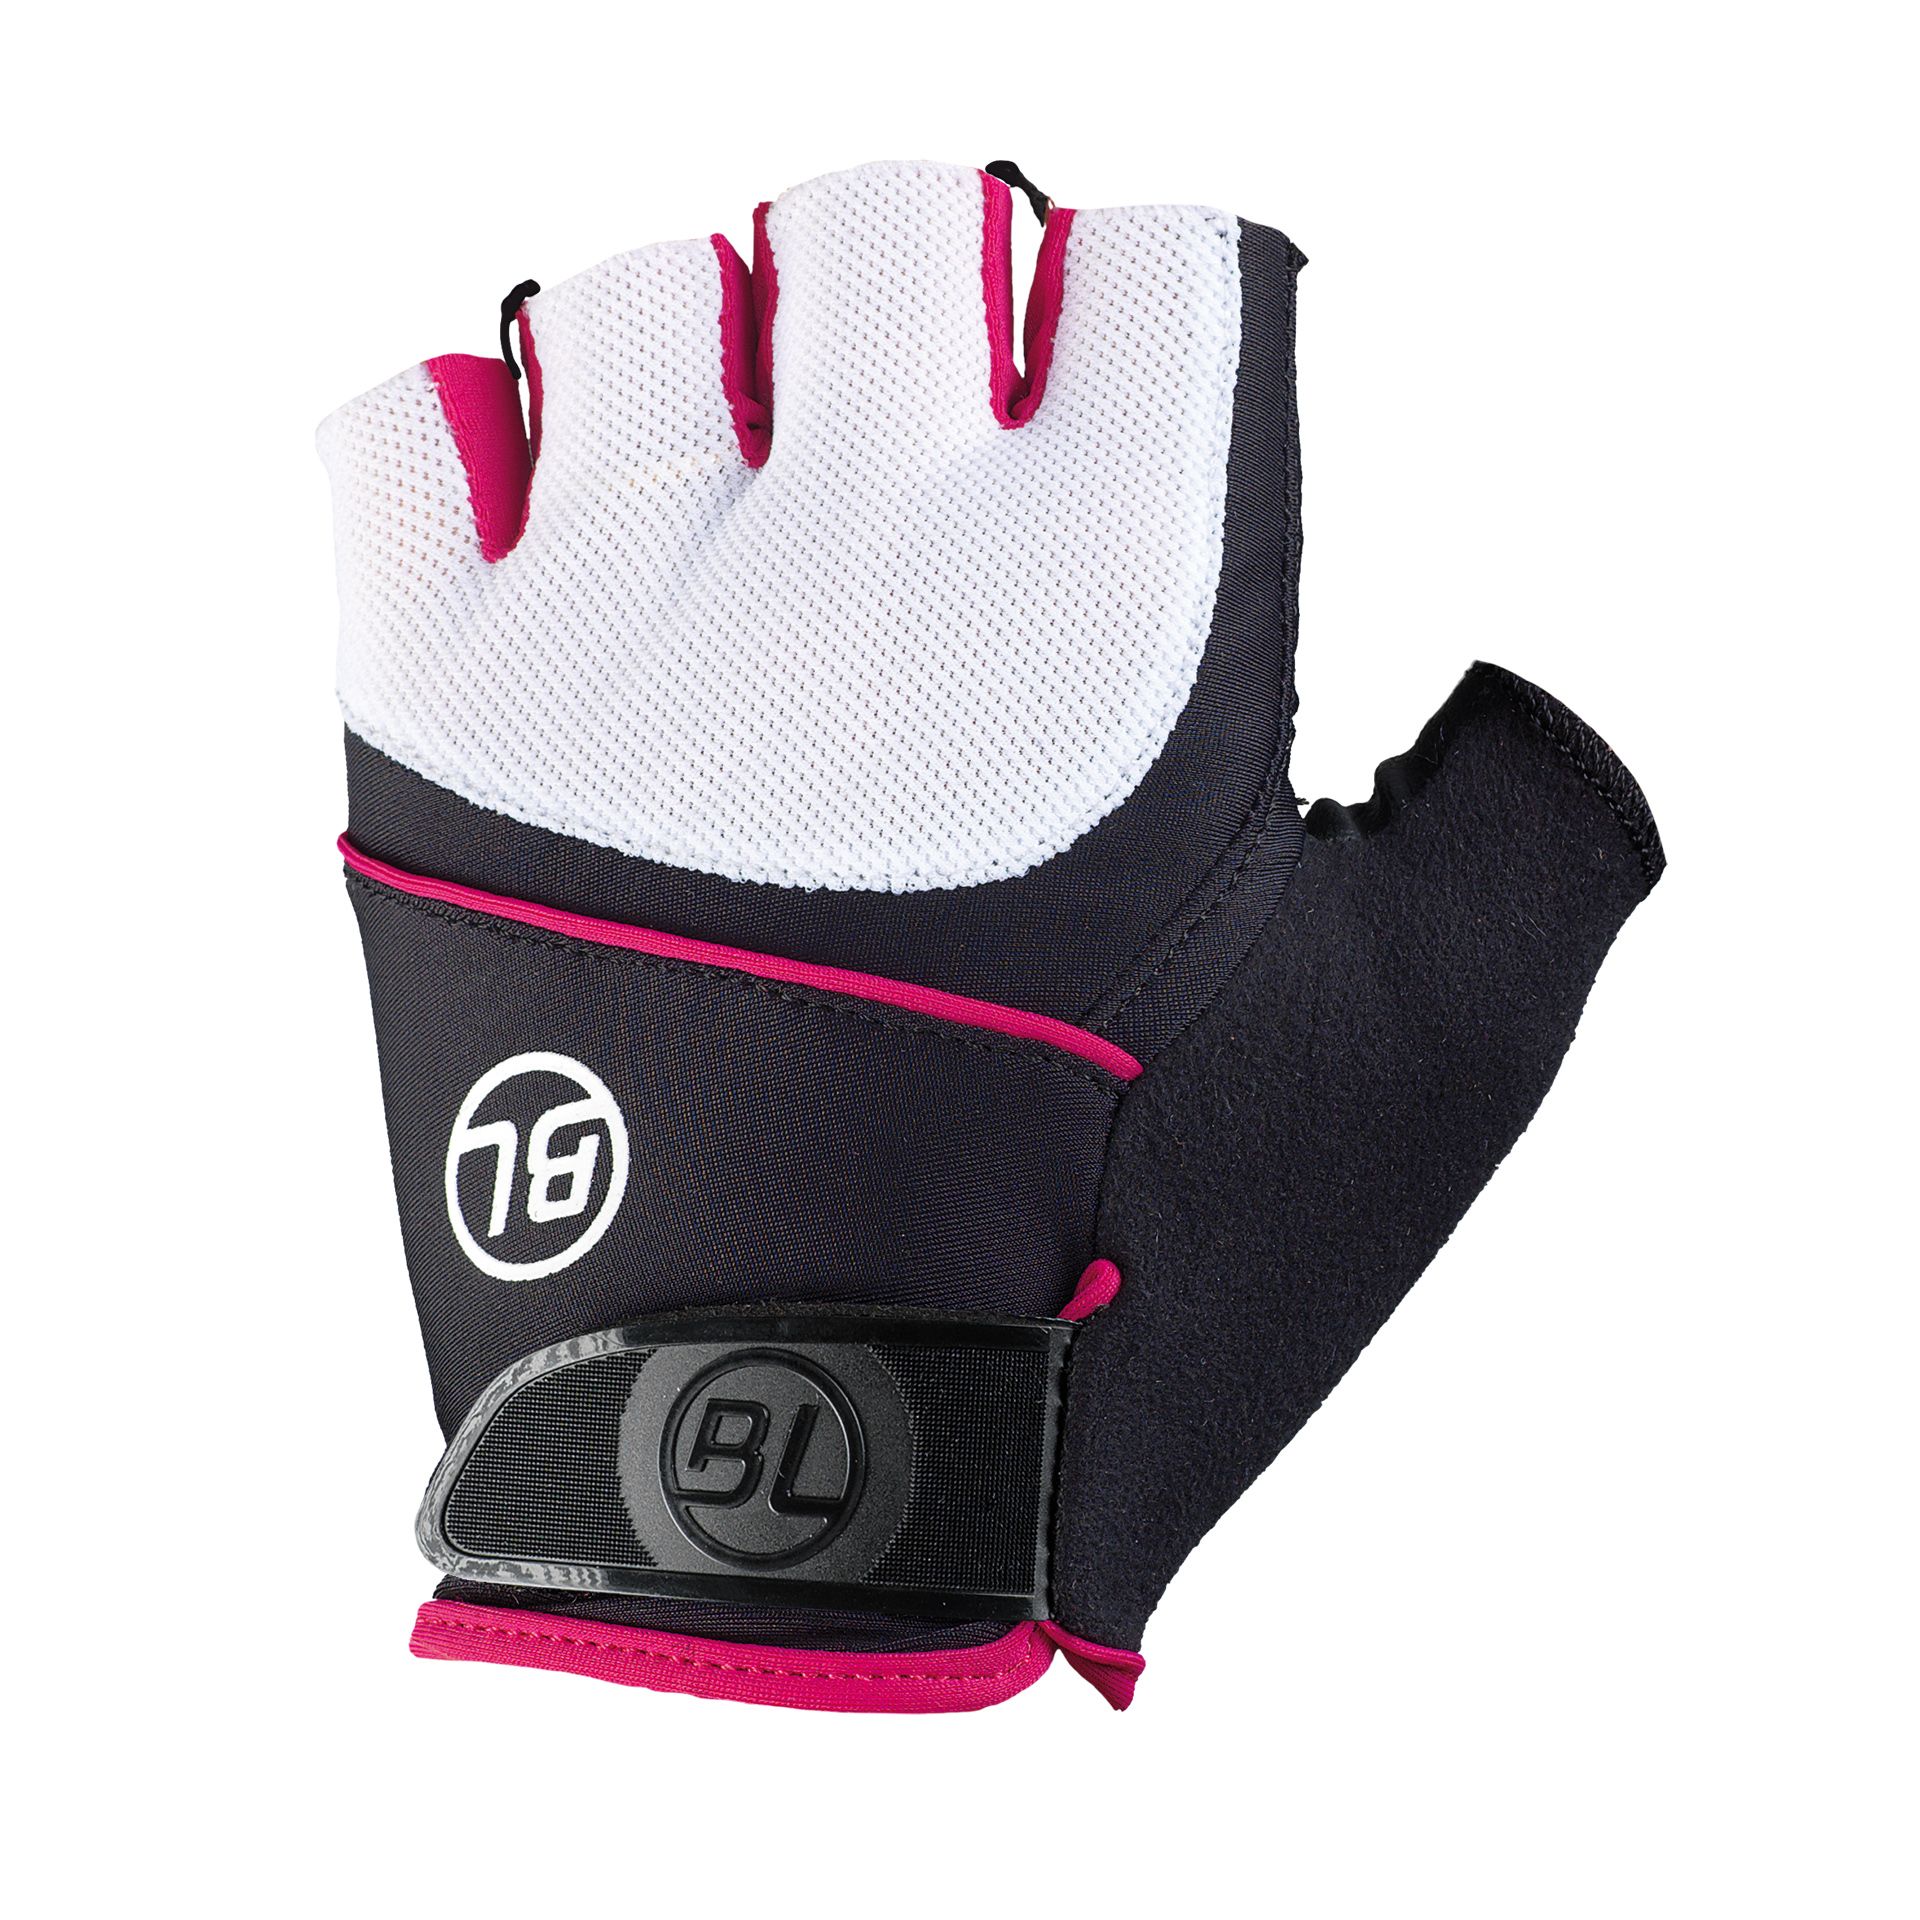 Перчатки Bicycle Line GUIDA, женские, без пальцев, черно-бело-розовые, размер XS фото 